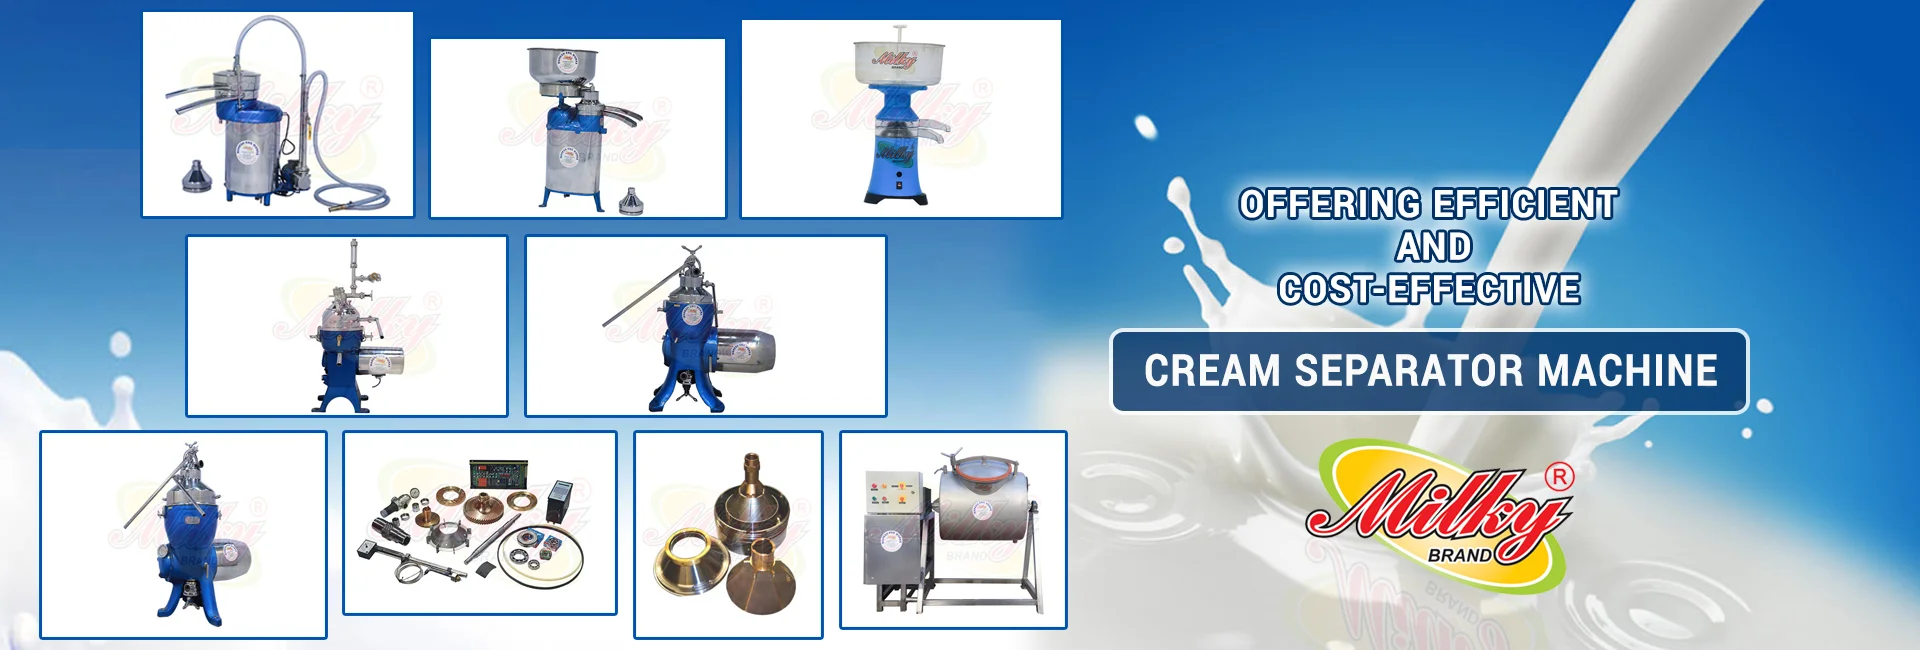 Cream Separator Machine, Automatic Milk Cream Separator